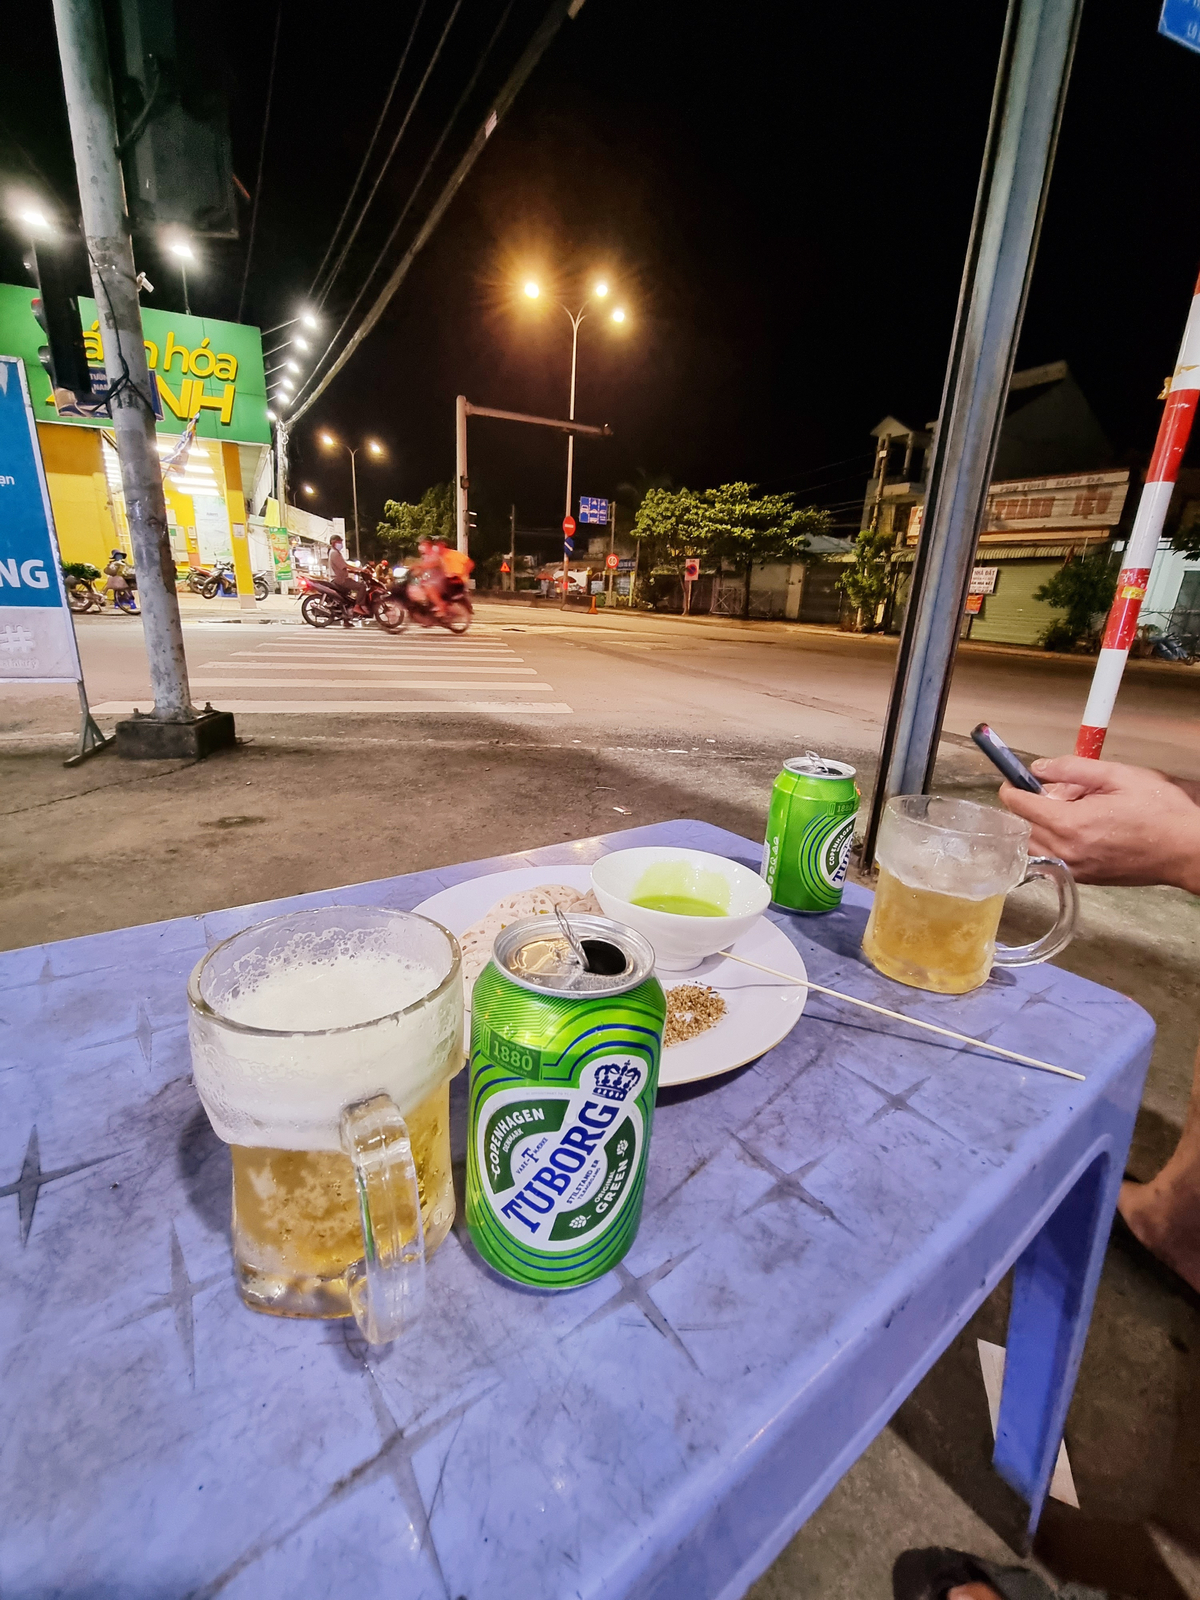 Hôm nay mình xin rì viu bia này nhen. Vị của nó nằm giữa Sài Gòn và Tiger ... cũng dễ uống ......